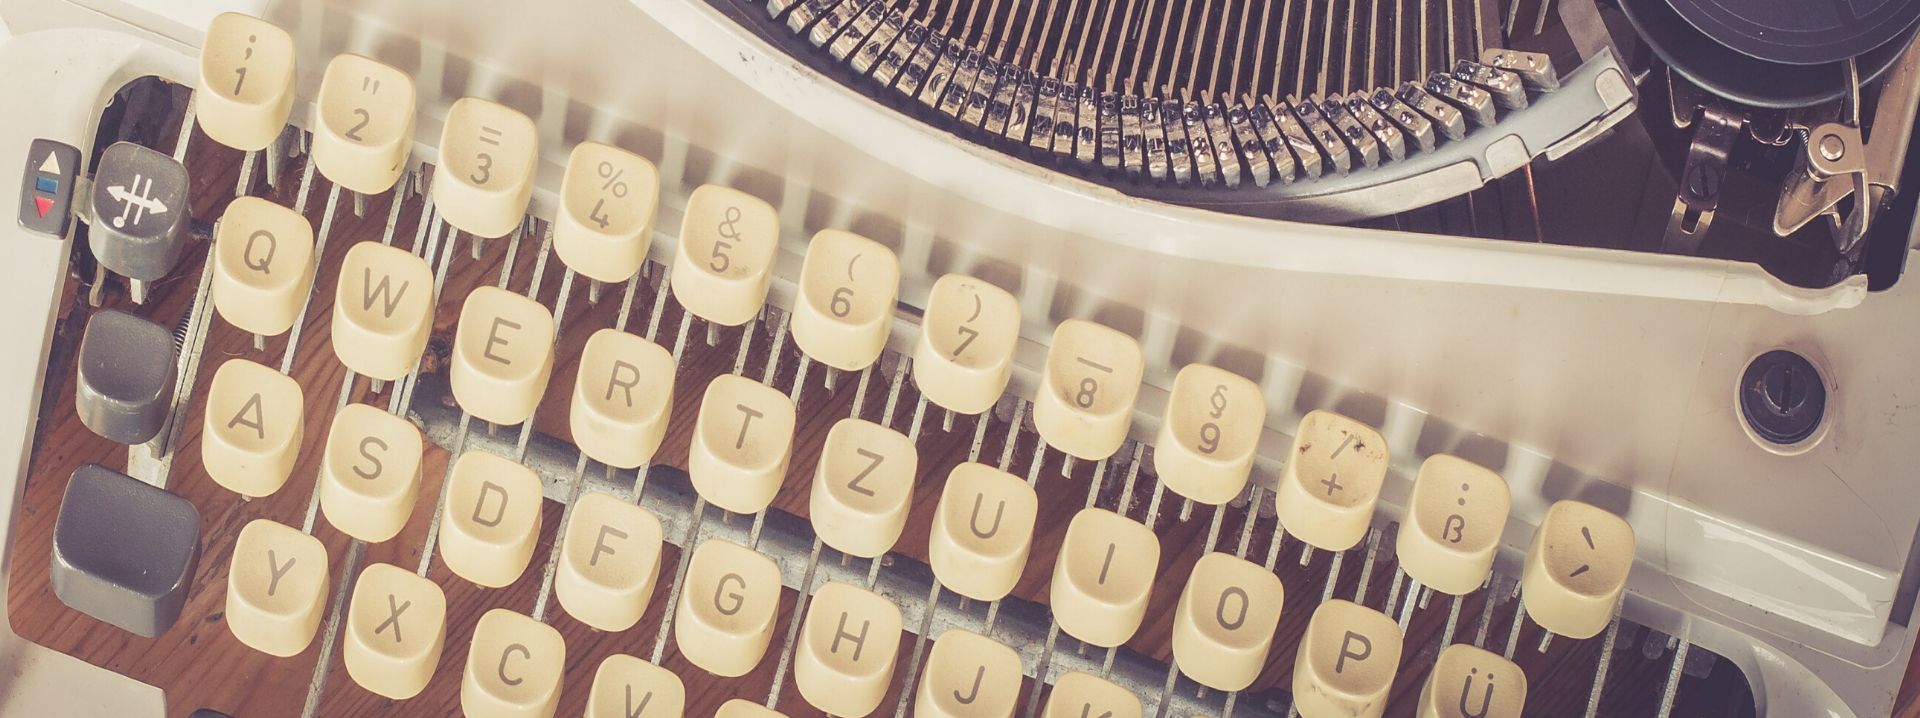 Nahaufnahme von Tasten einer alten Schreibmaschine